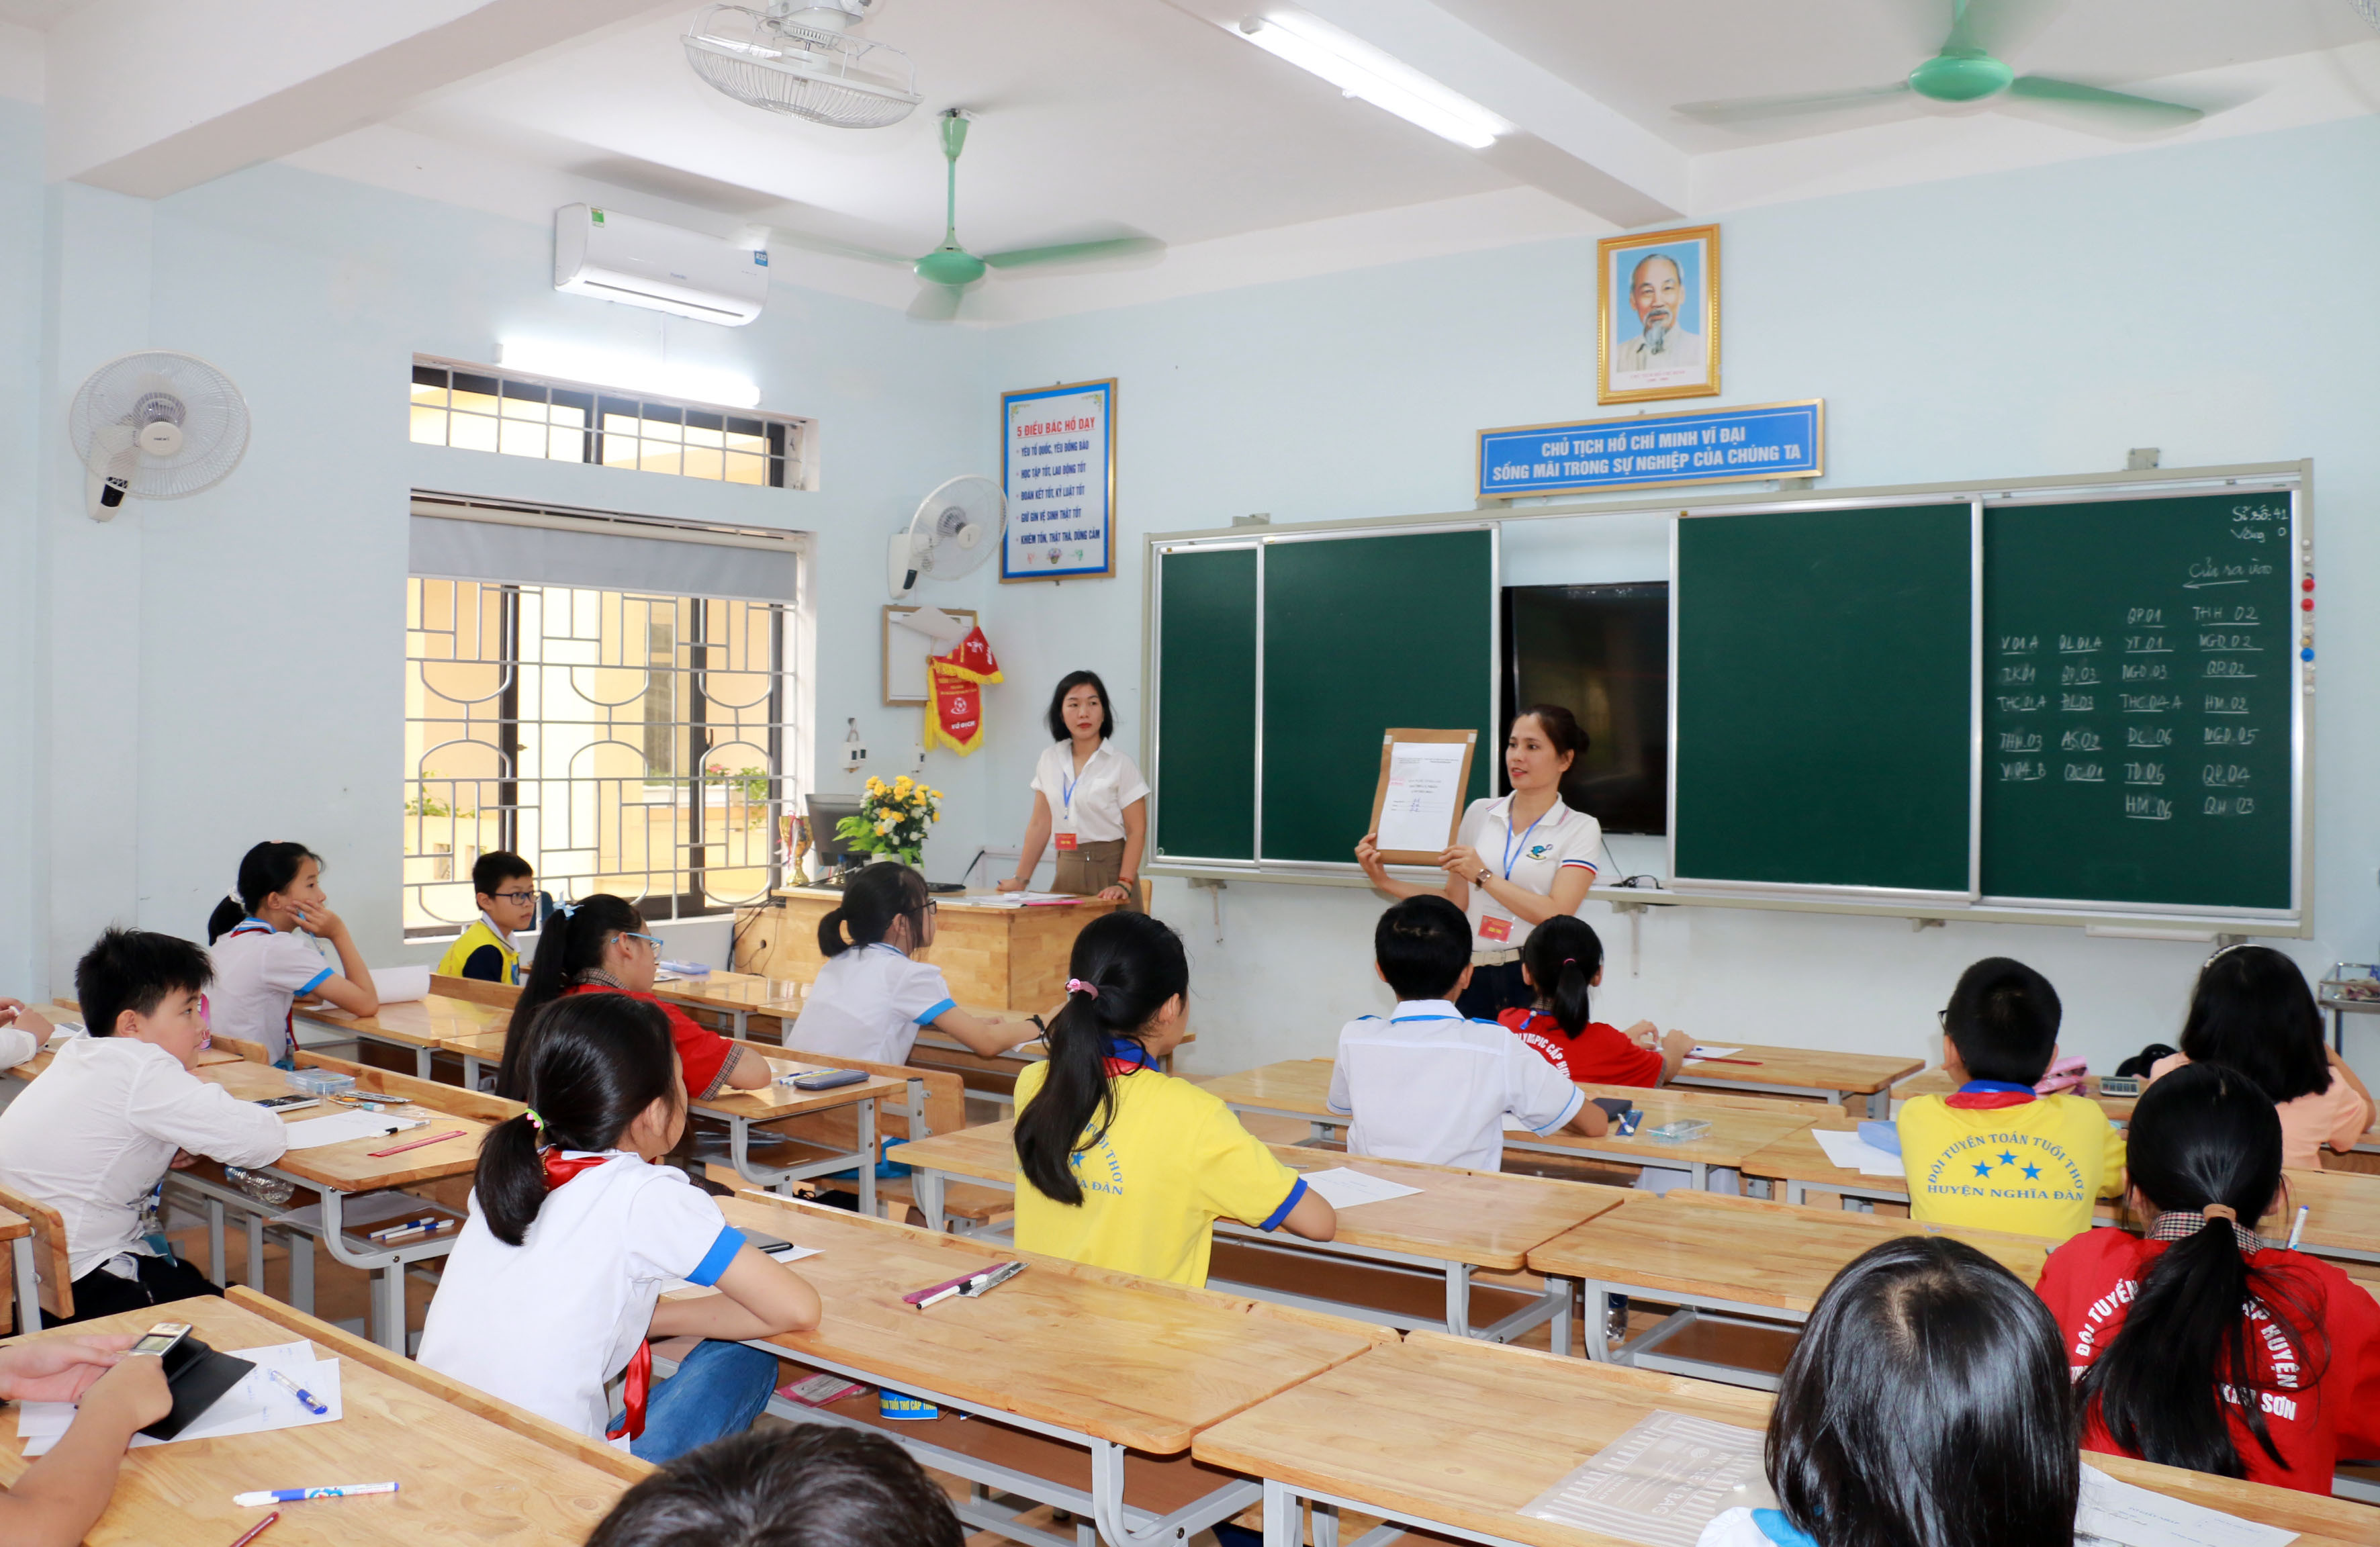 Hiện Nghệ An có khoảng 22.000 giáo viên đủ điều kiện được nâng lương sau khi được nâng hạng. Ảnh: Mỹ Hà